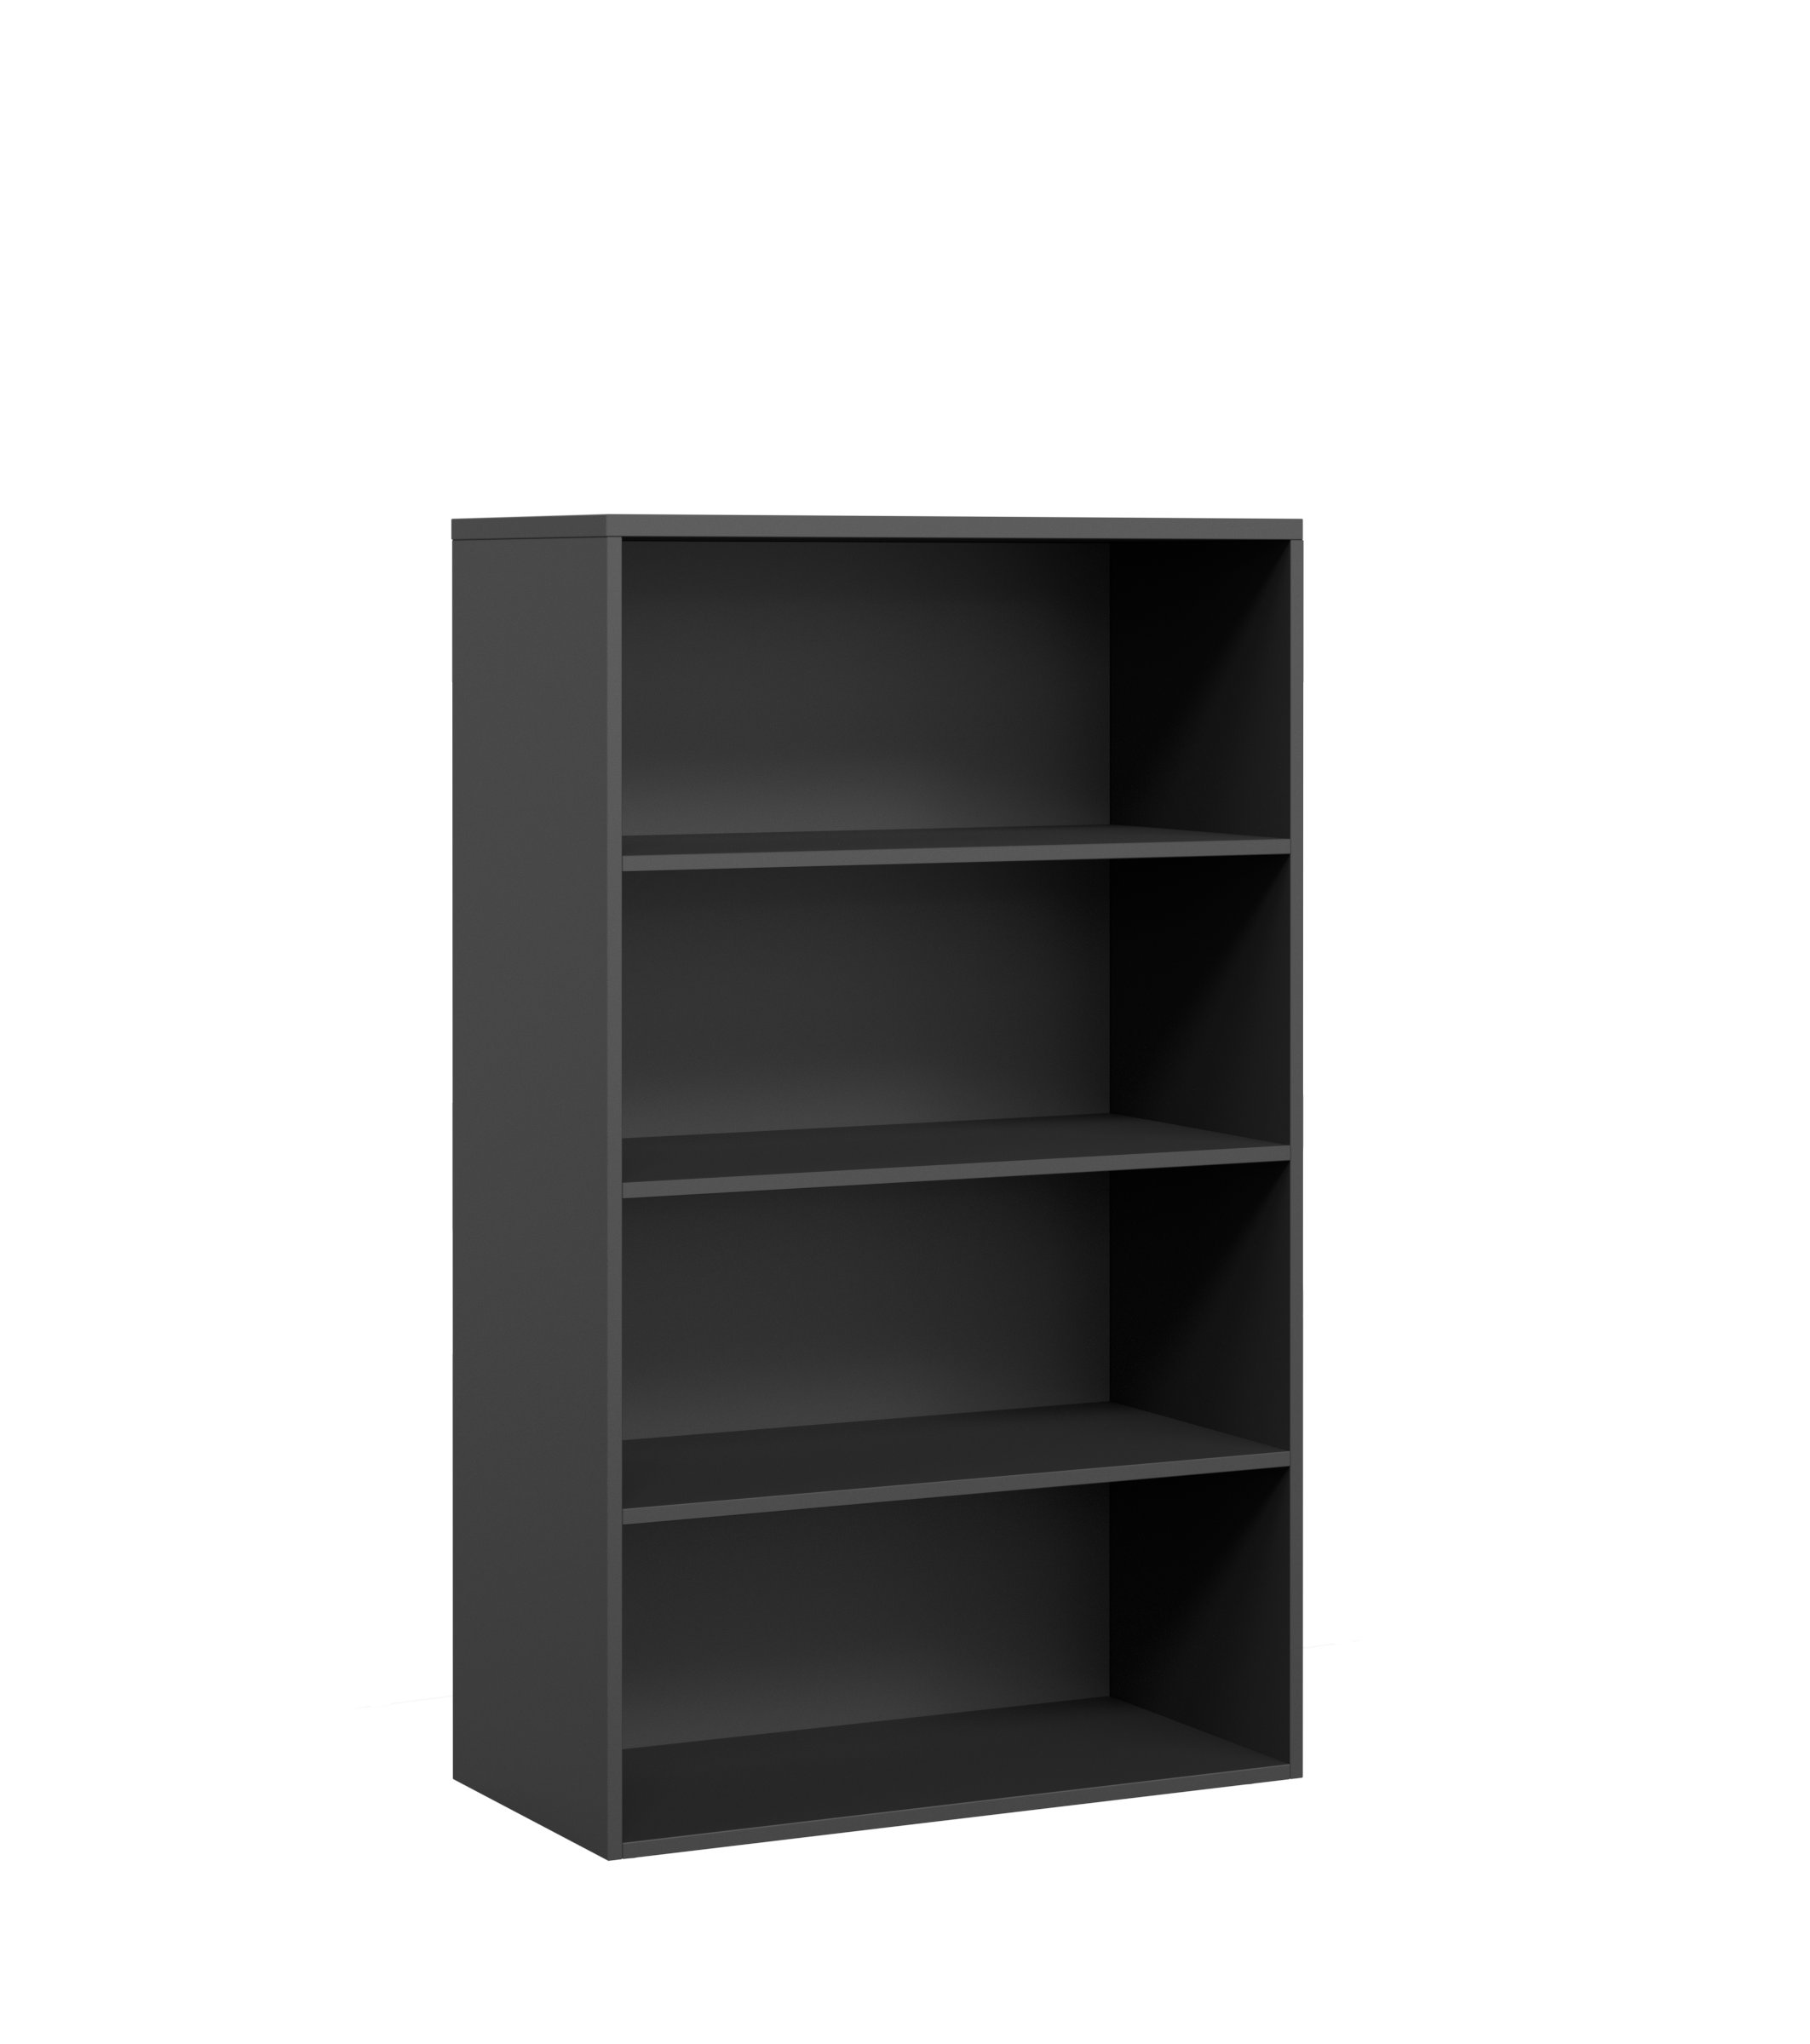 DK Open Bookshelf